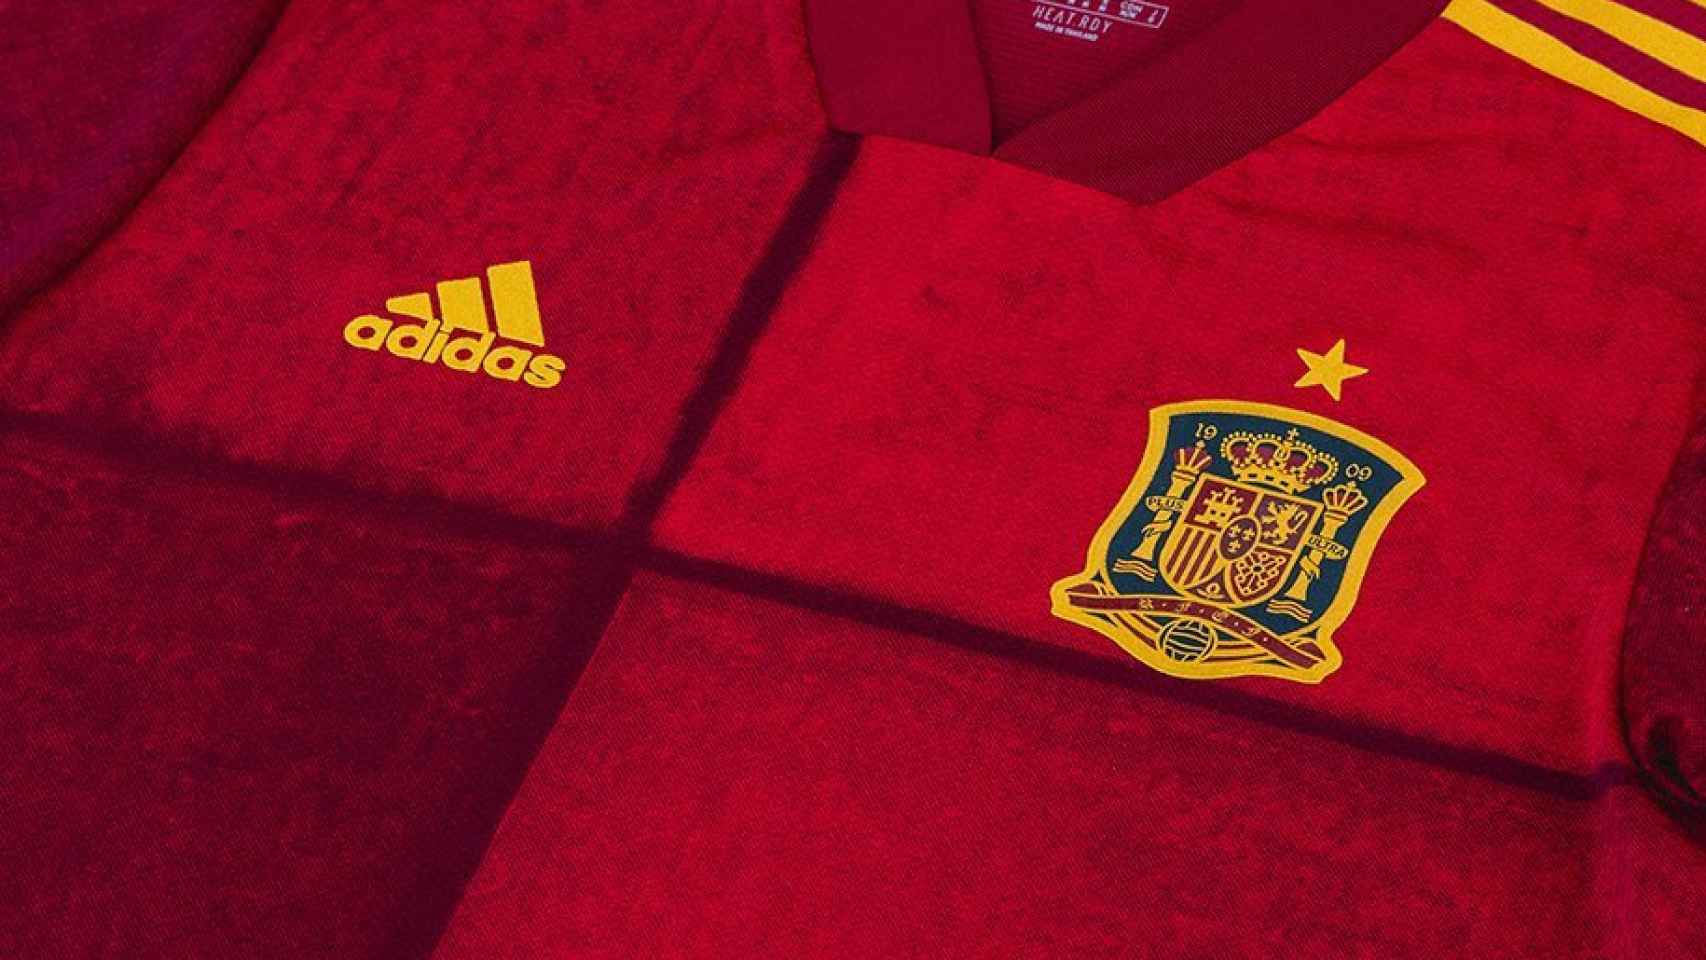 La camiseta que llevará la Selección en la Eurocopa 2020